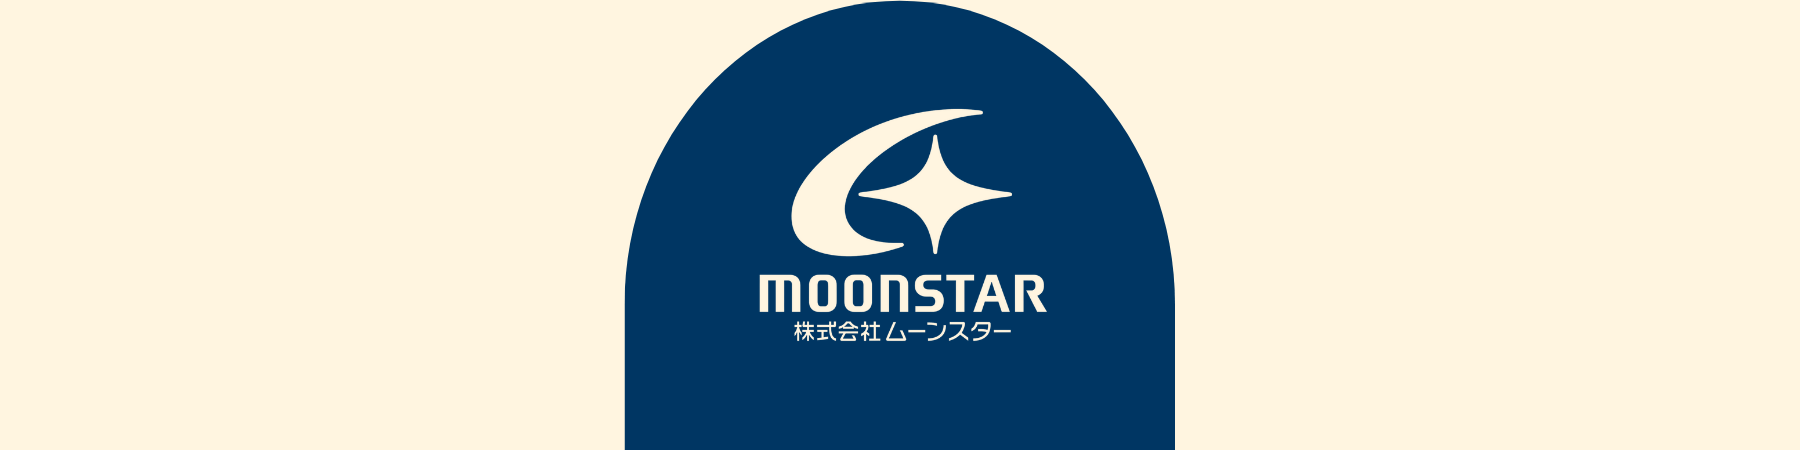 Moonstar at the local merchants